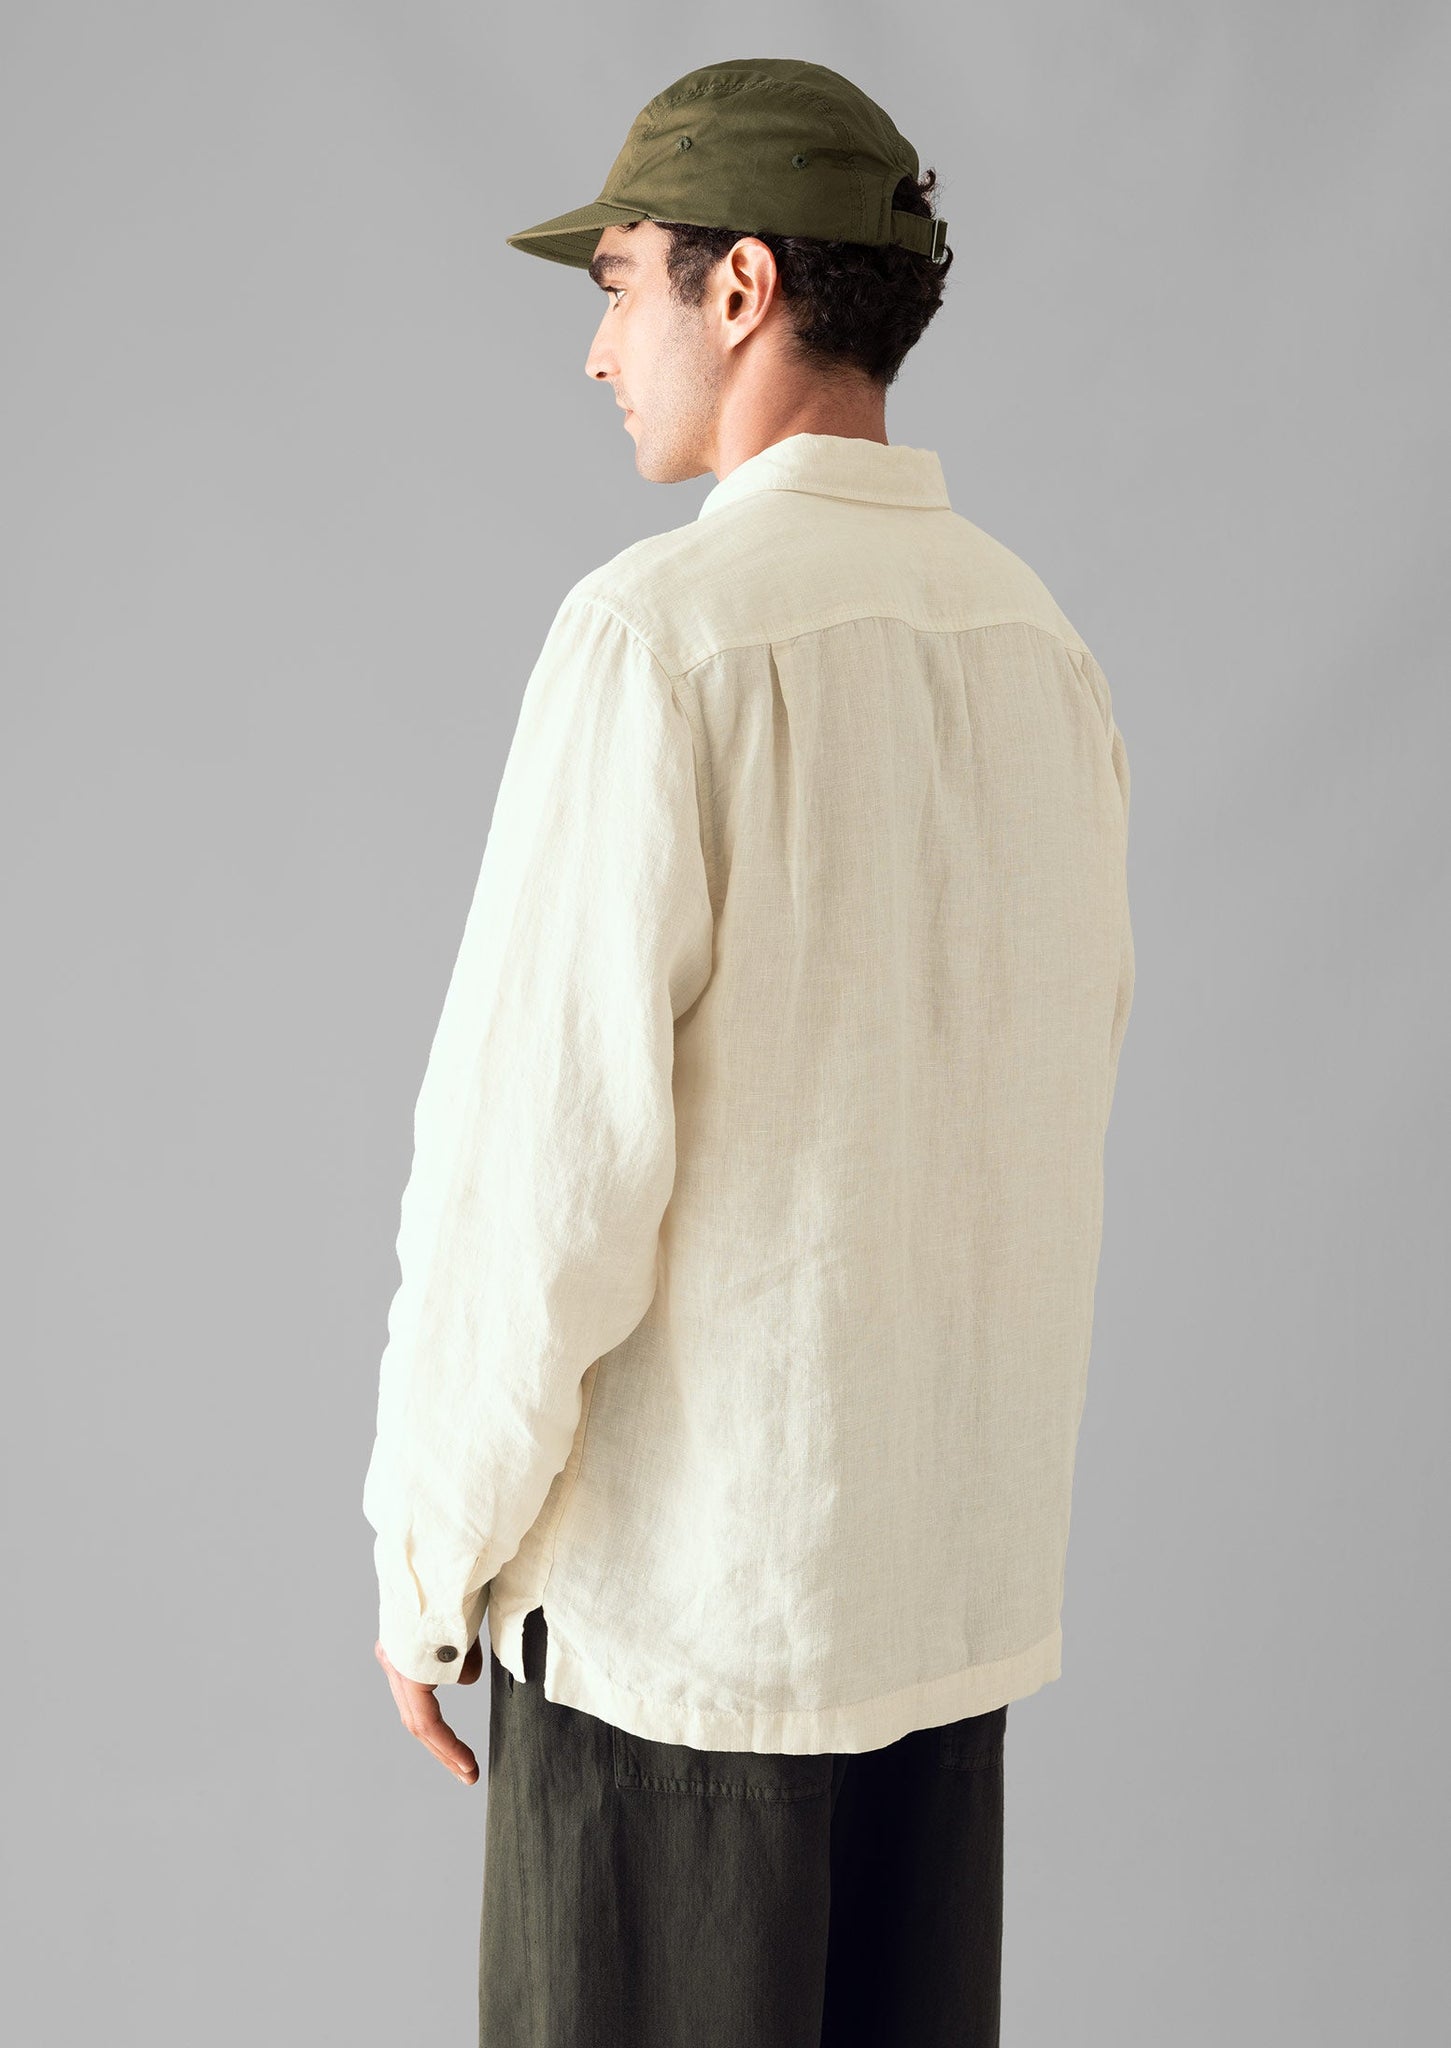 Half Placket Linen Shirt | Parchment